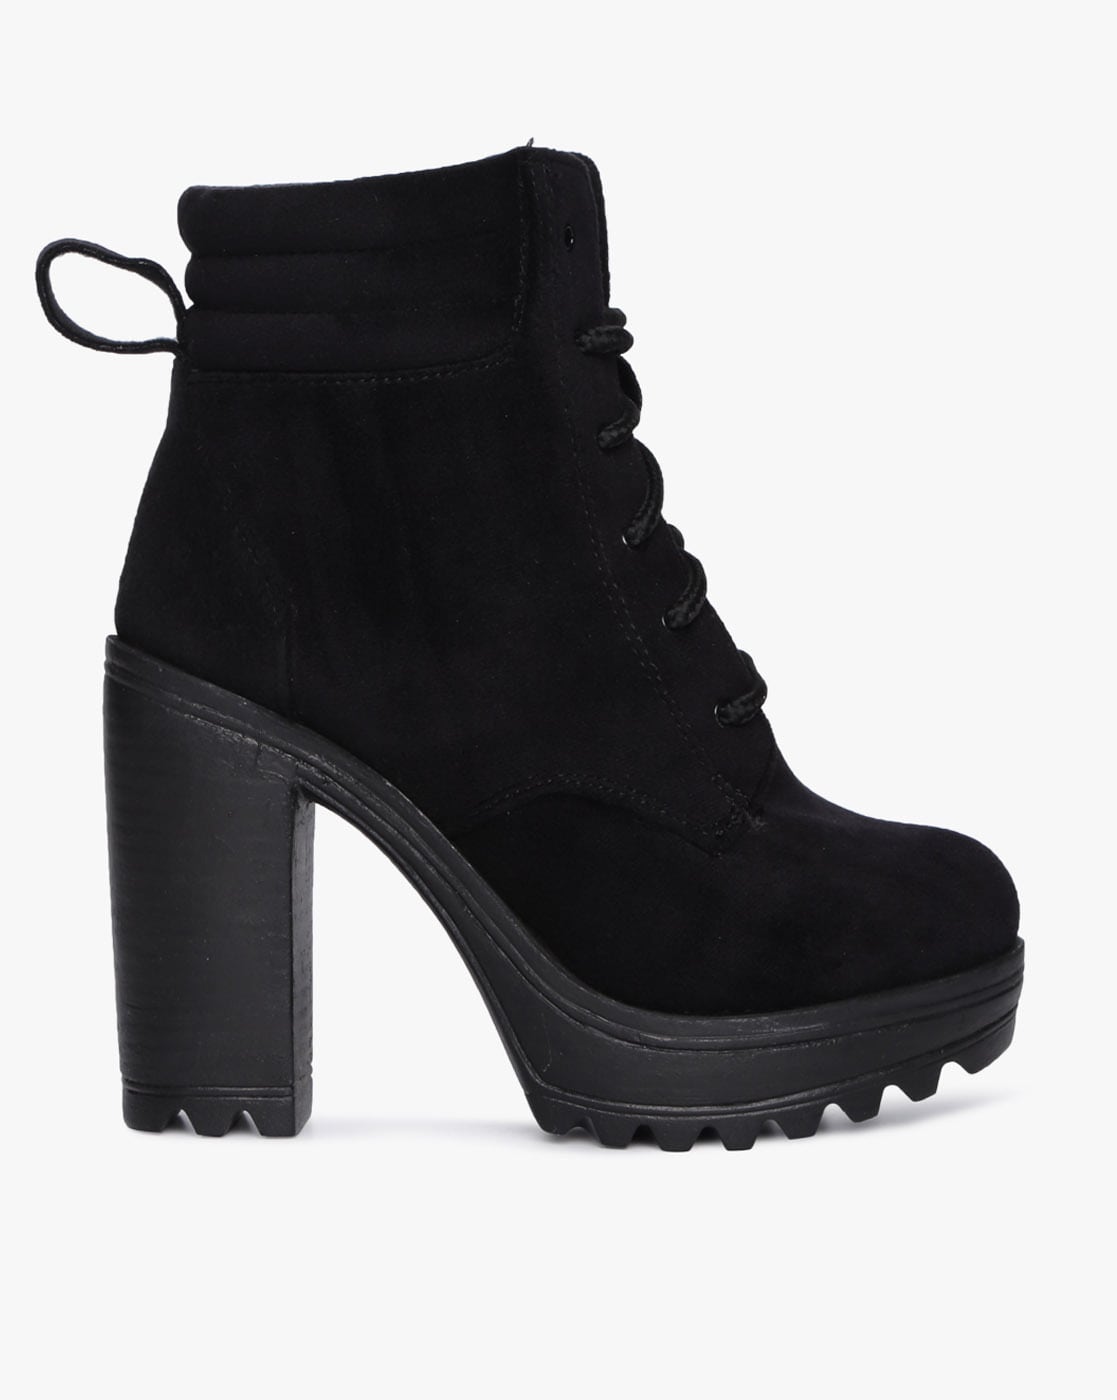 Catwalk Women's Calf-Length Heeled Boots TAN Fashion (5582T) : Amazon.in:  Shoes & Handbags